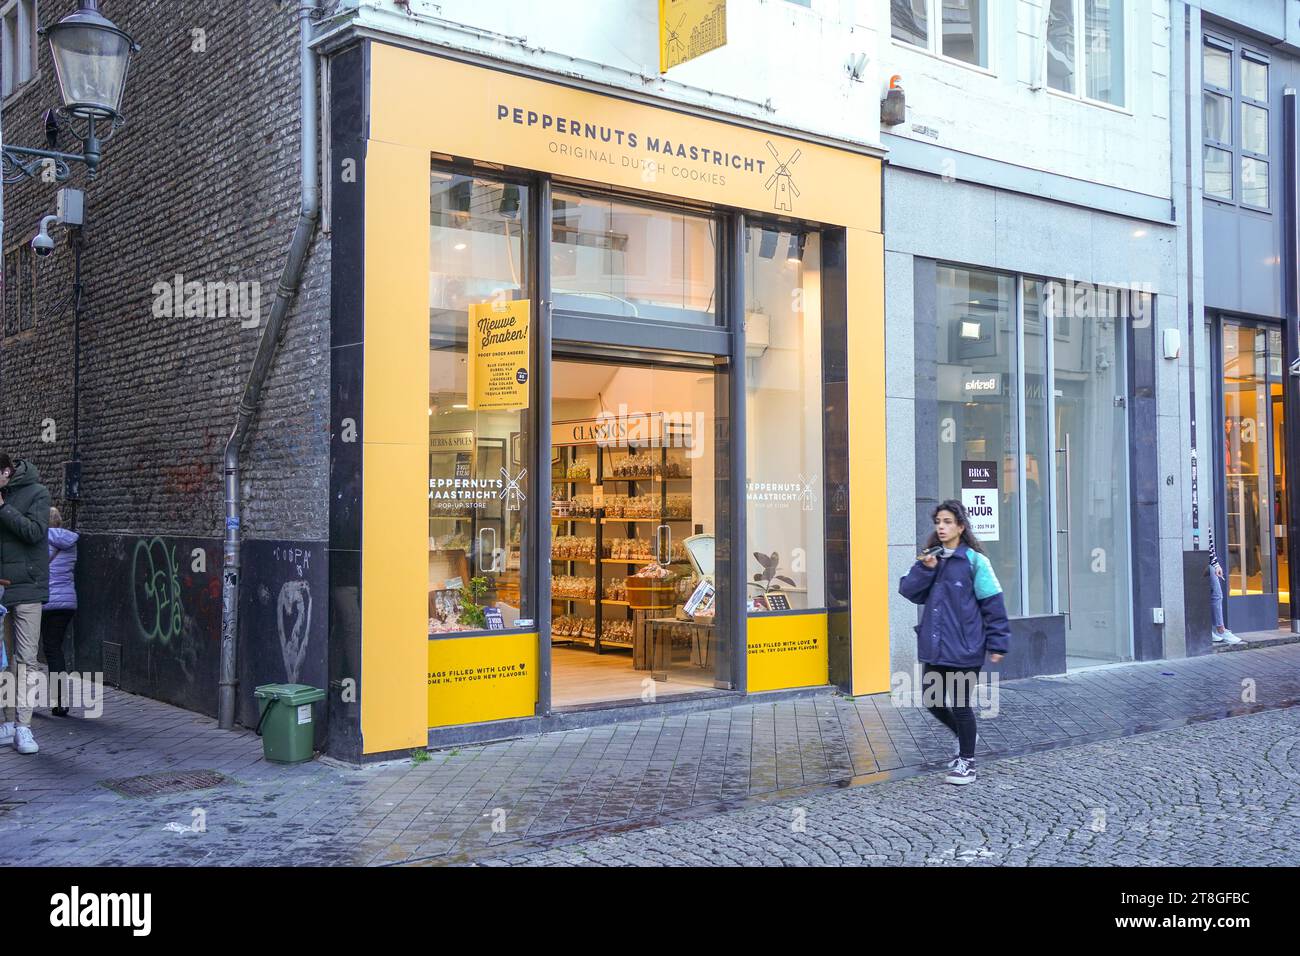 Peppernuts Maastricht, magasin, boutique vendant des cookies hollandais originaux, pays-Bas. Banque D'Images